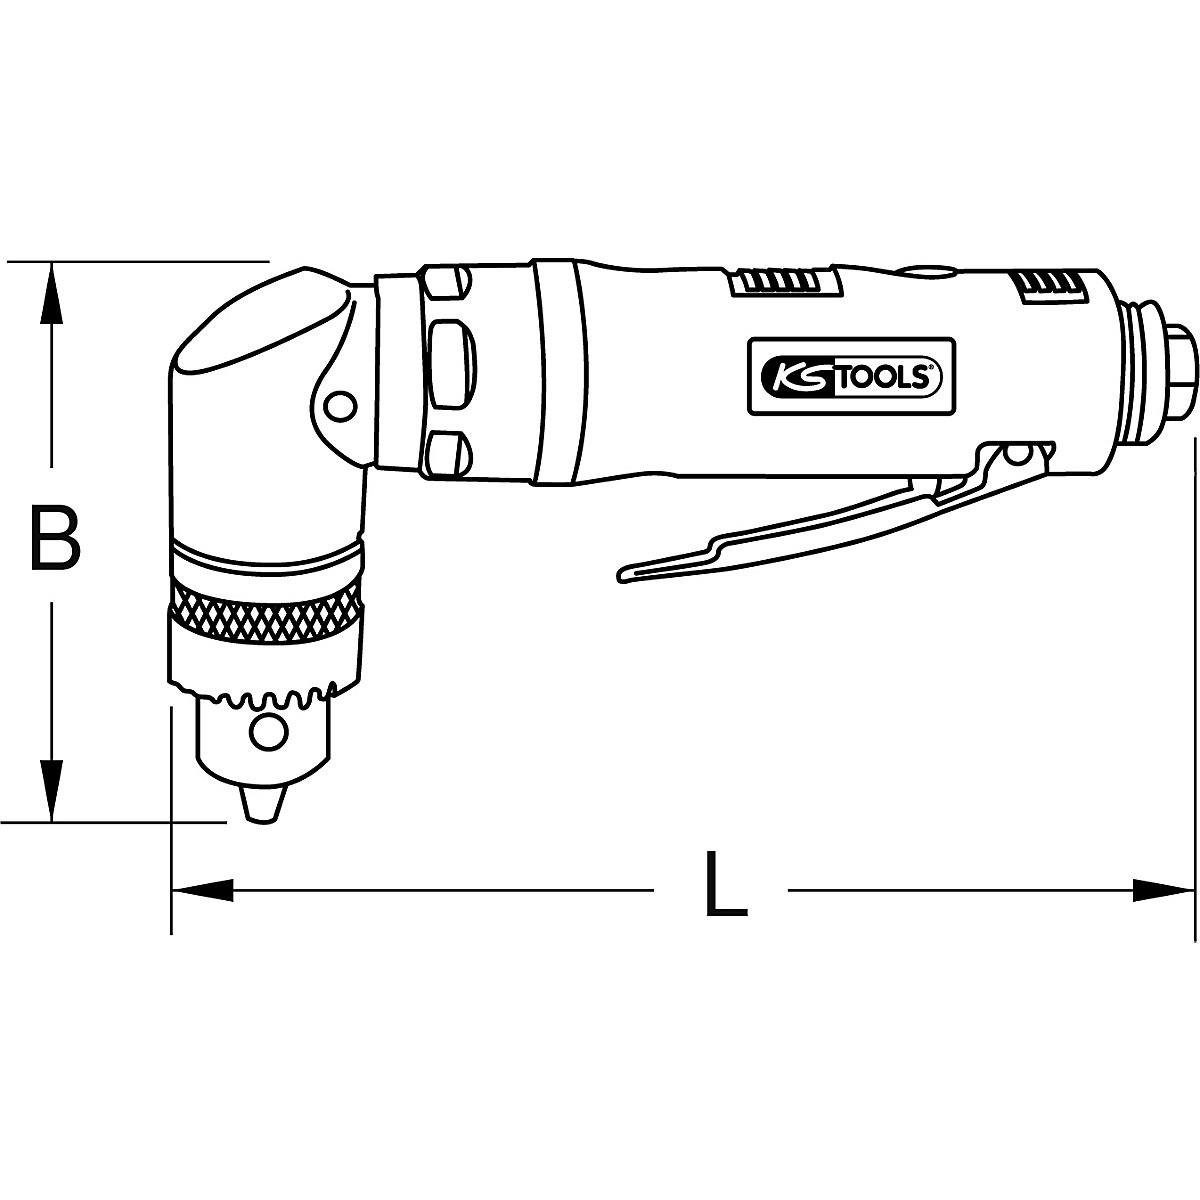 Kotni vrtalnik s stisnjenim zrakom – KS Tools (Slika izdelka 6)-5